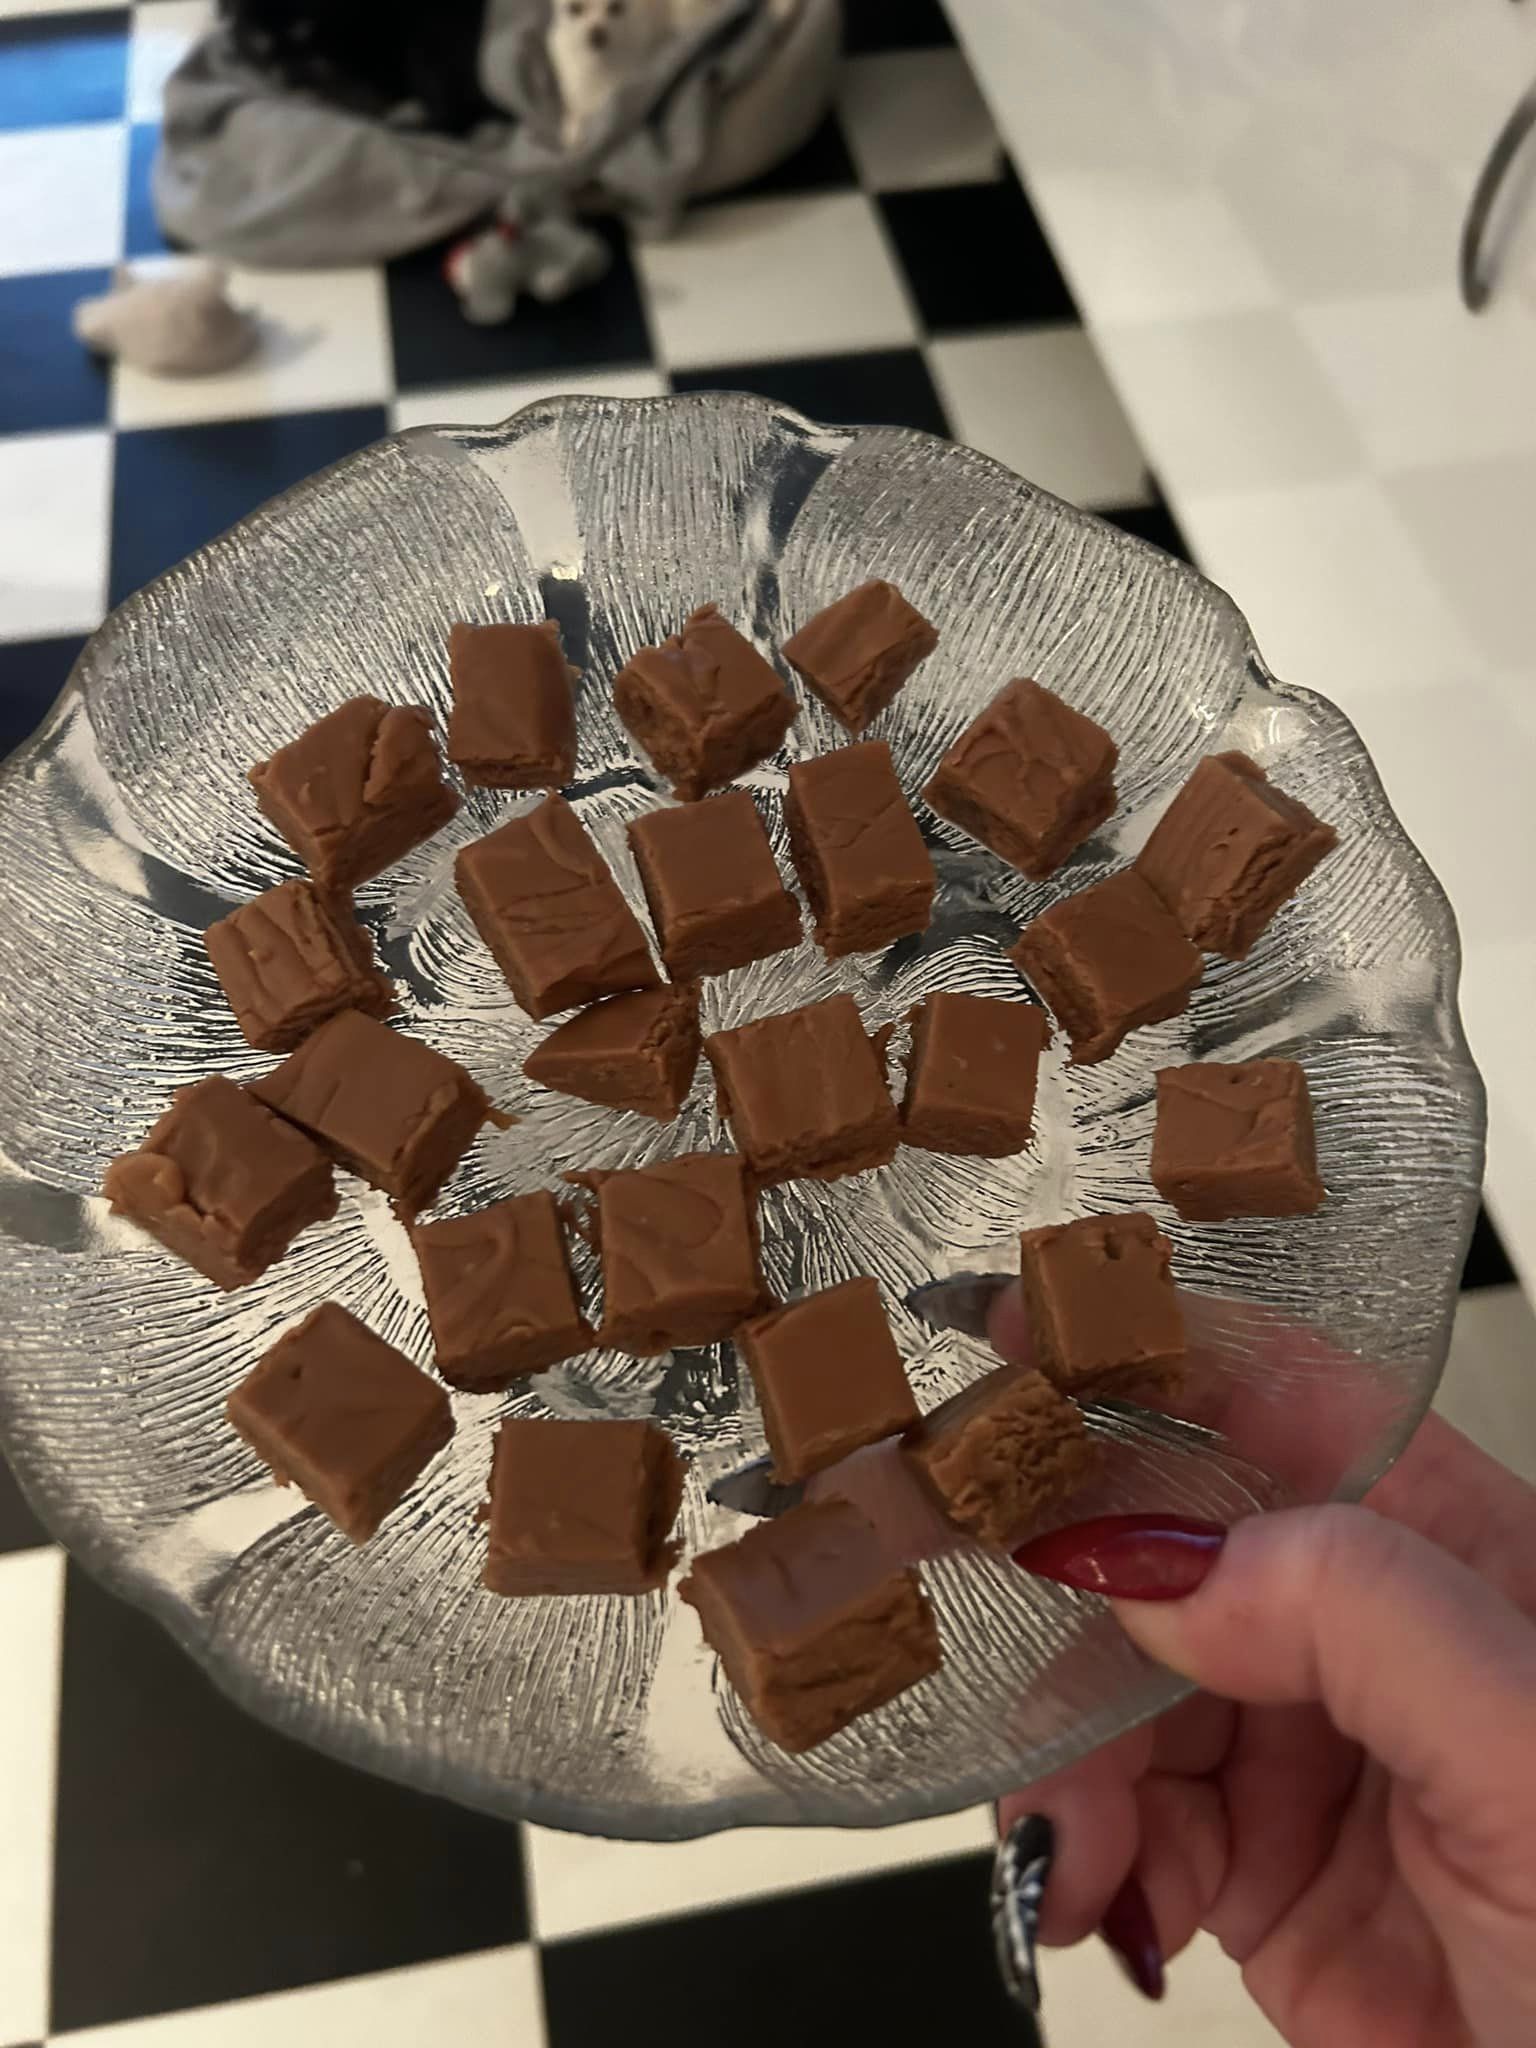 Hur gör man egna chokladrutor hemma i sitt kök?